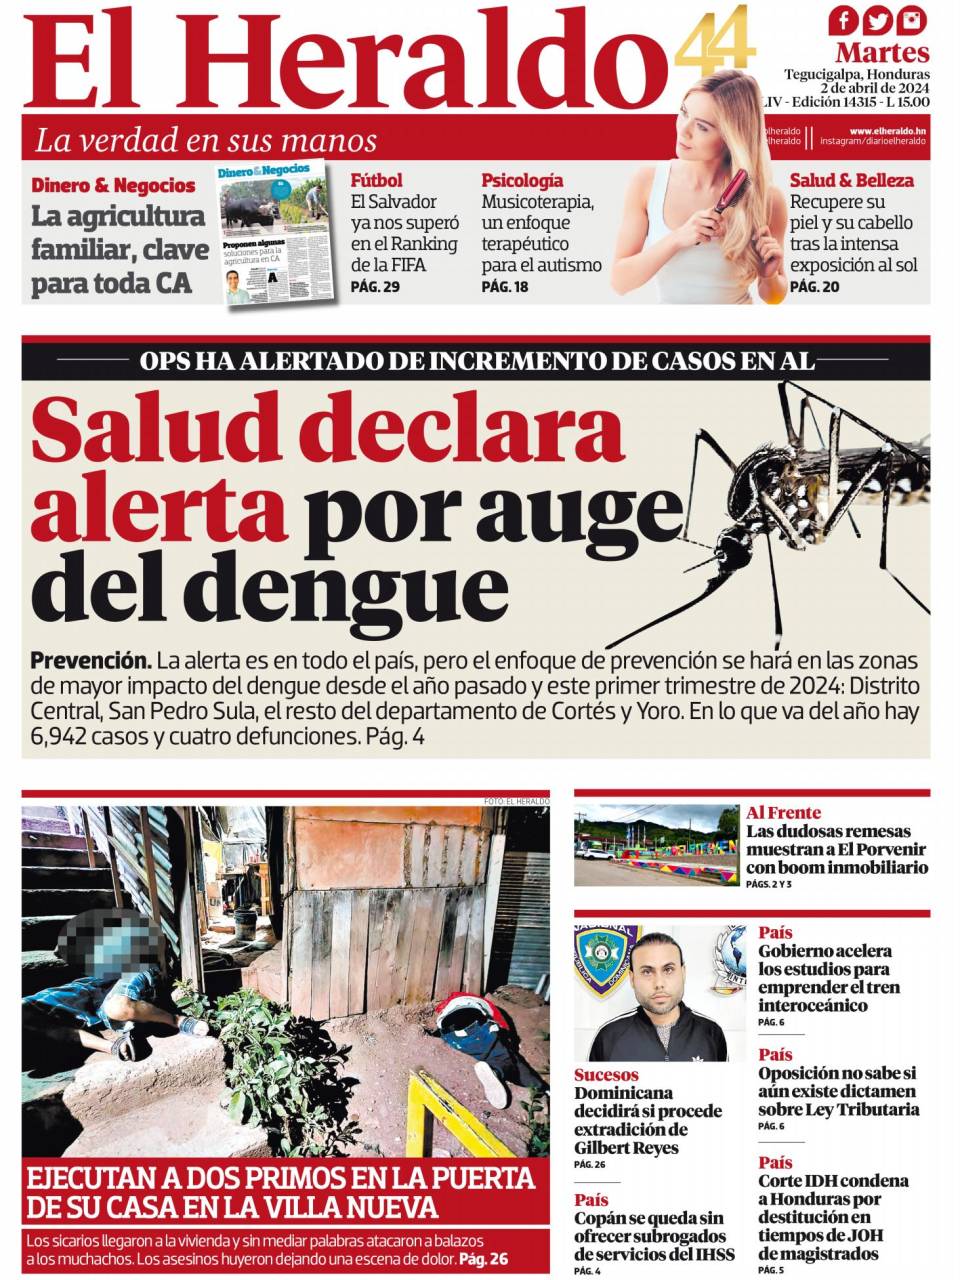 Salud declara alerta por auge del dengue